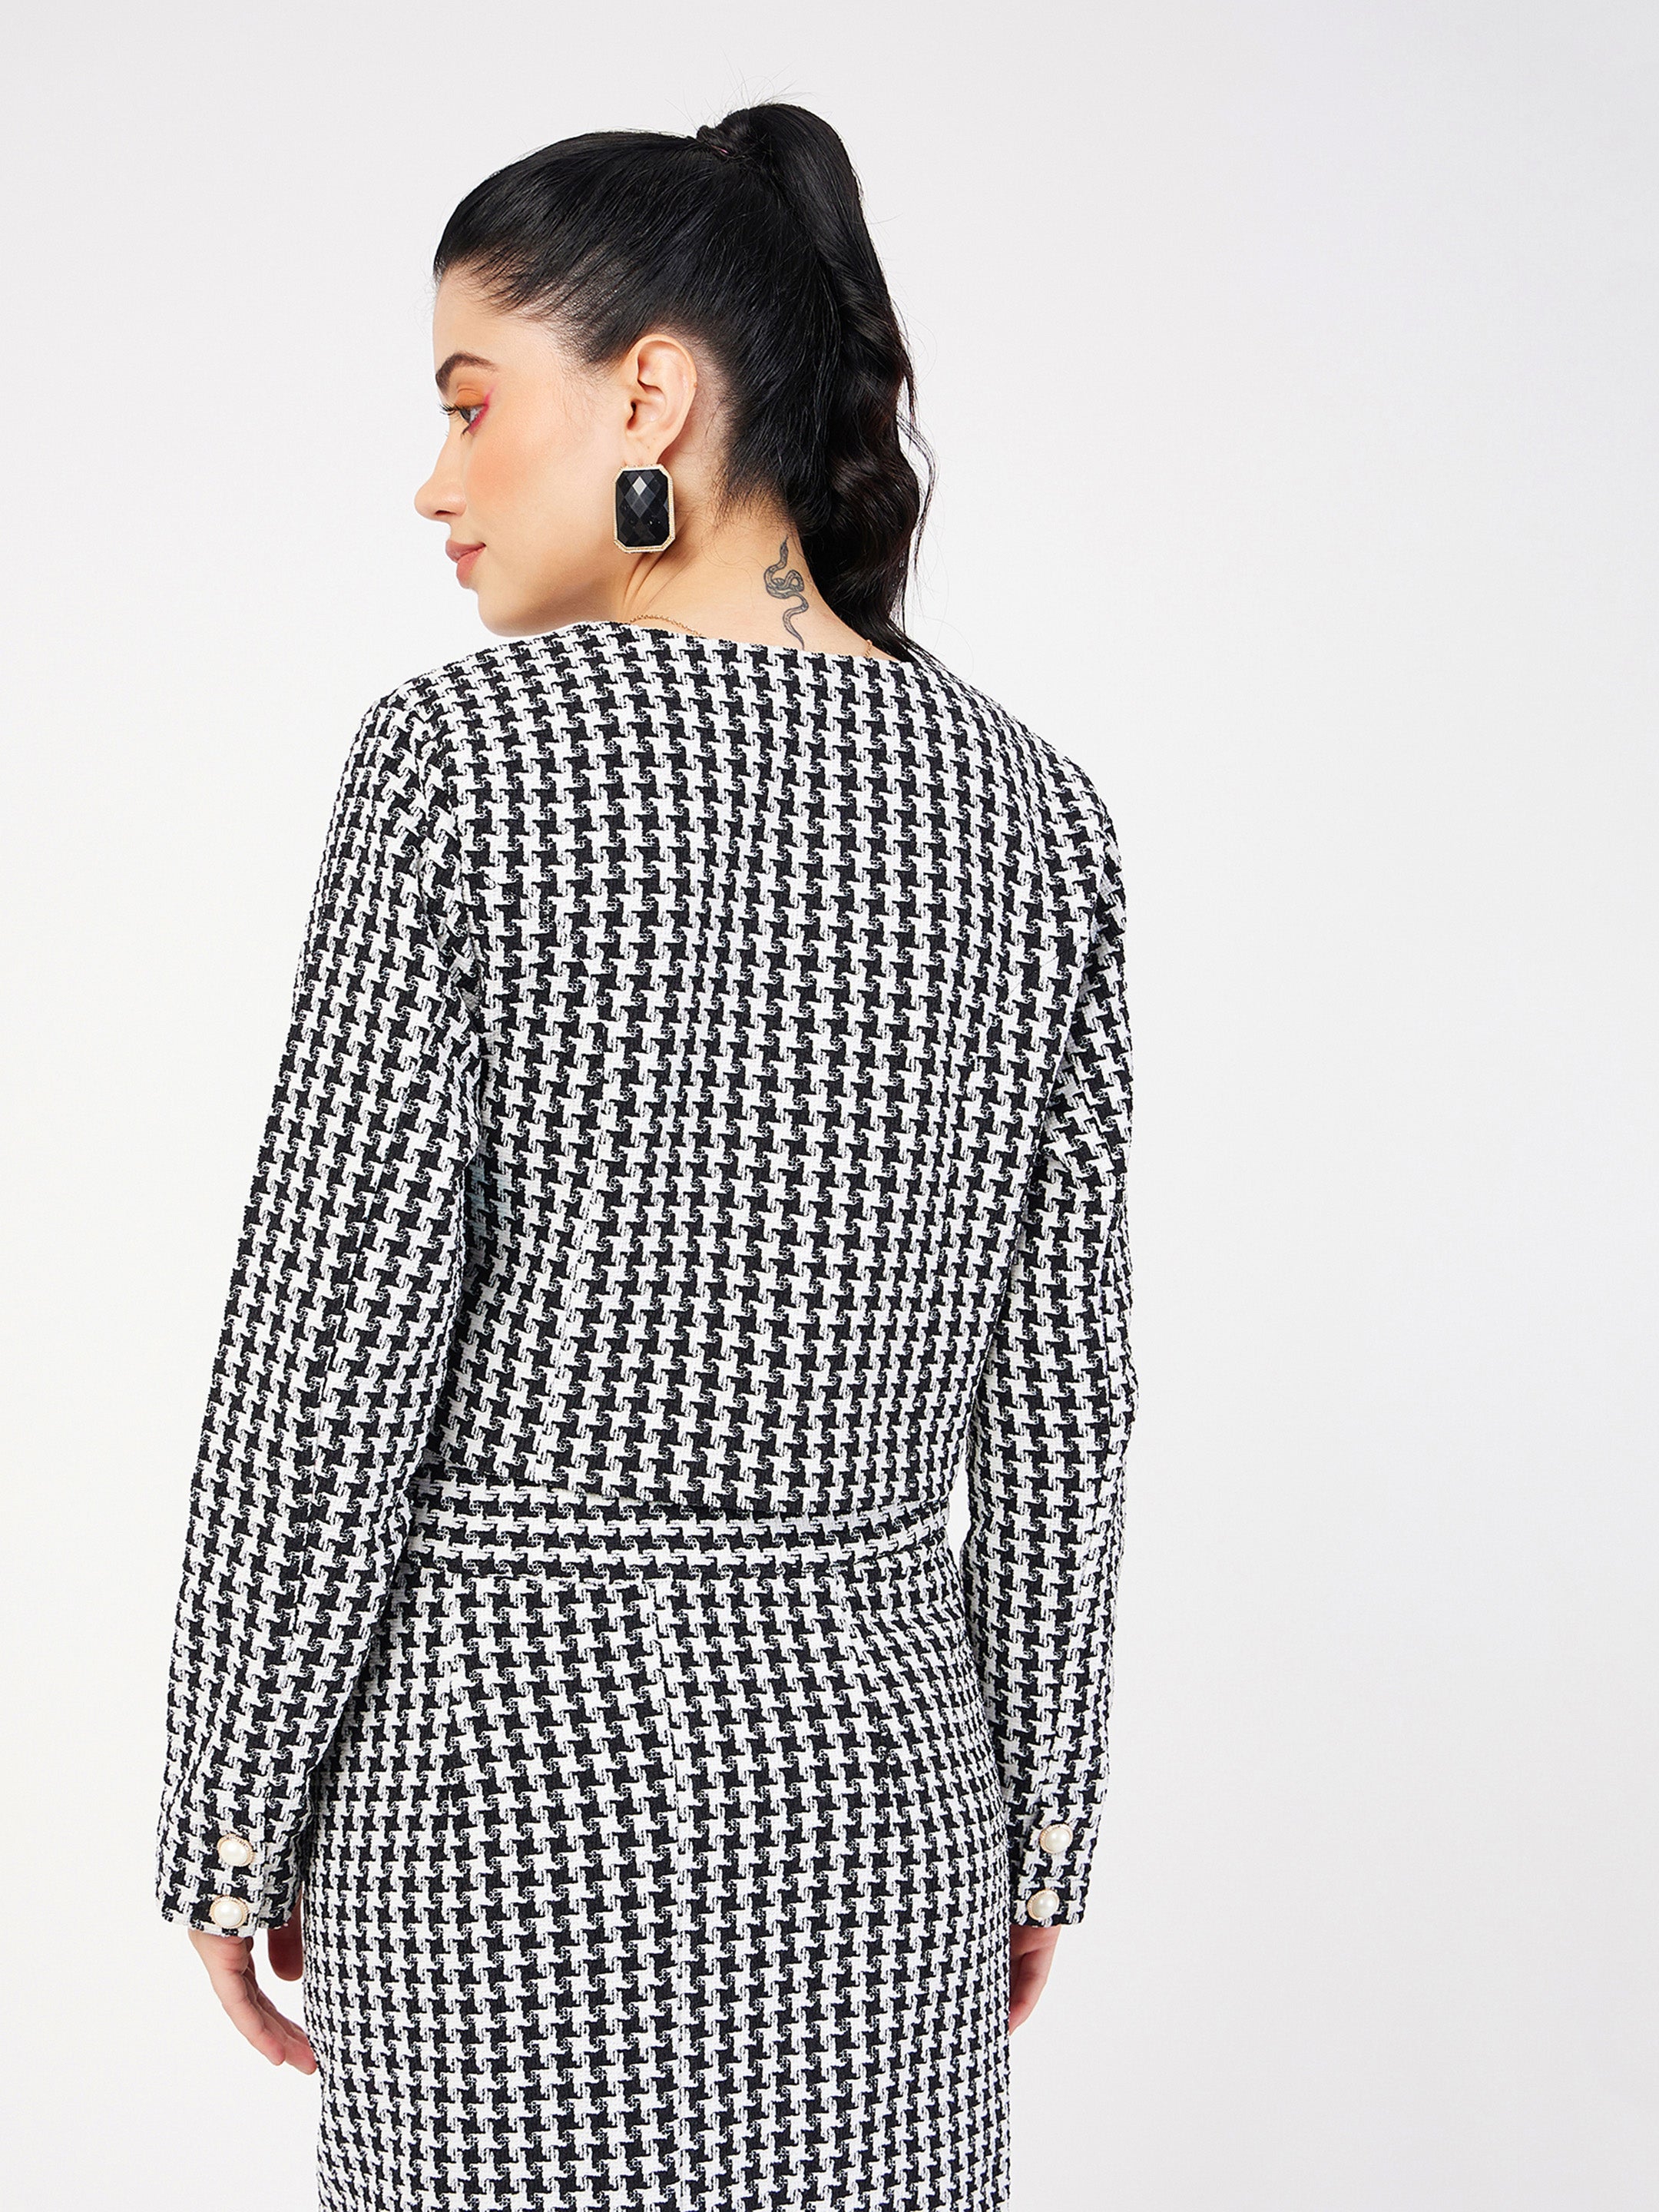 Women's Black Geo Jacquard Tweed Full Sleeves Top - Lyush